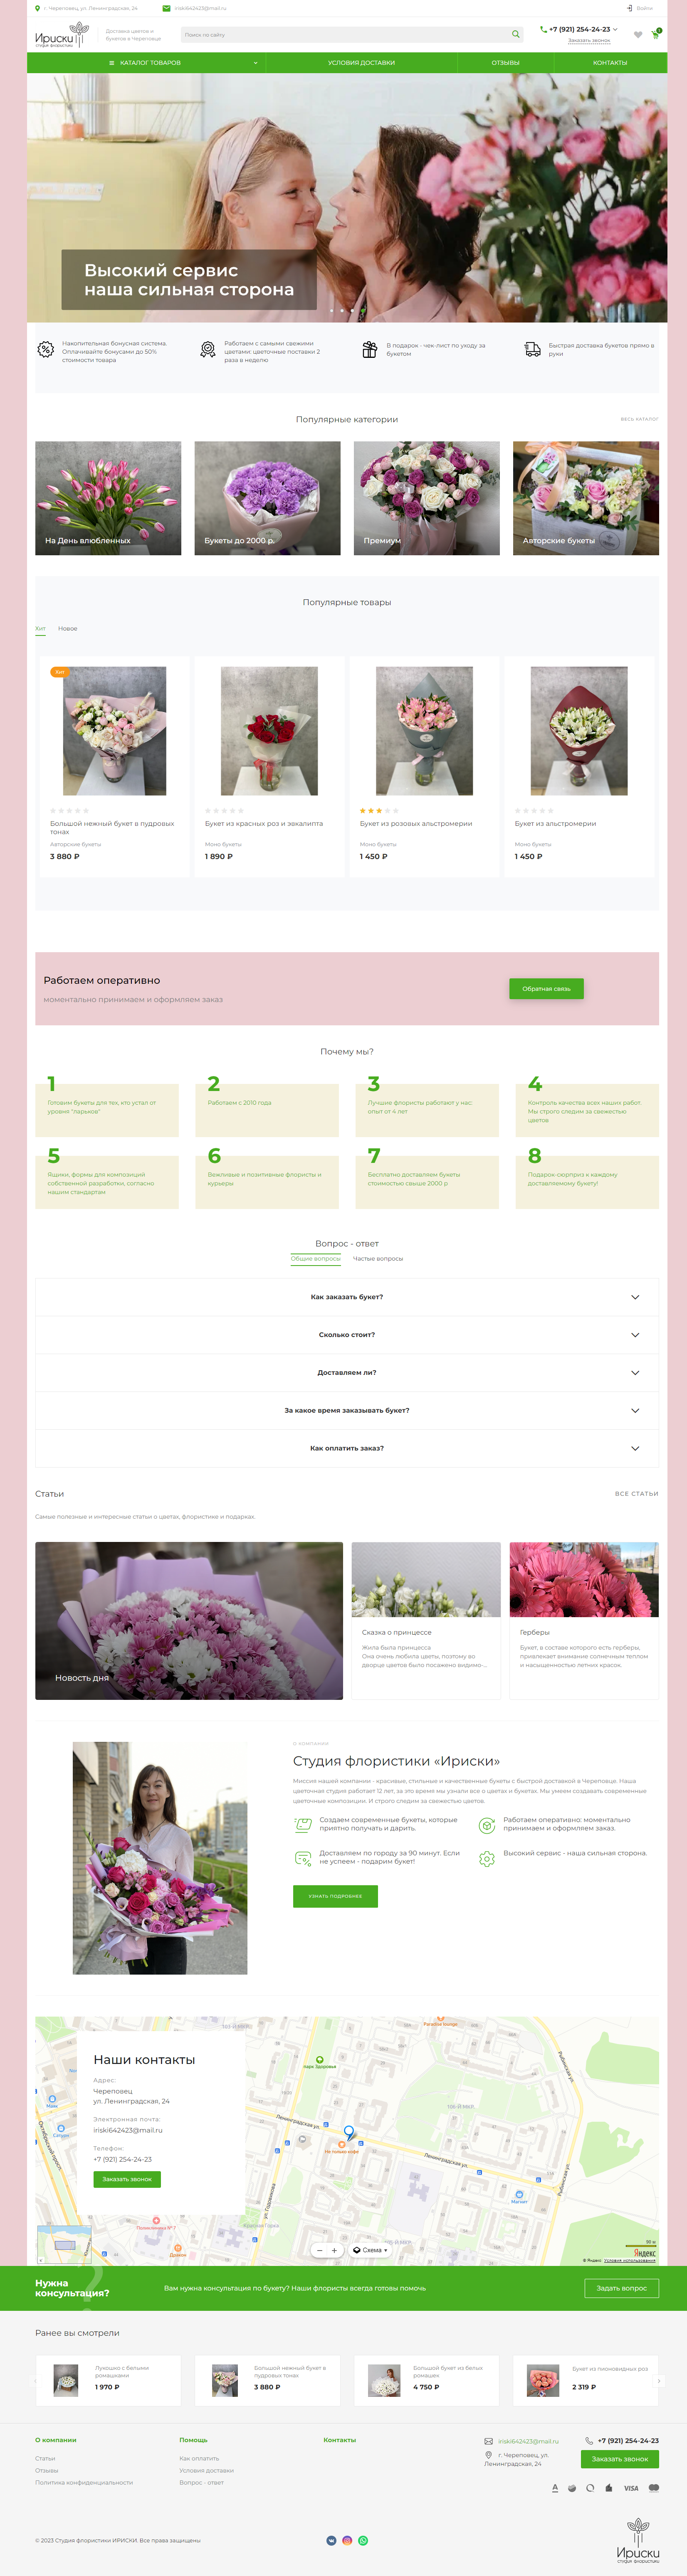 Создание интернет-магазина по продаже букетов цветов